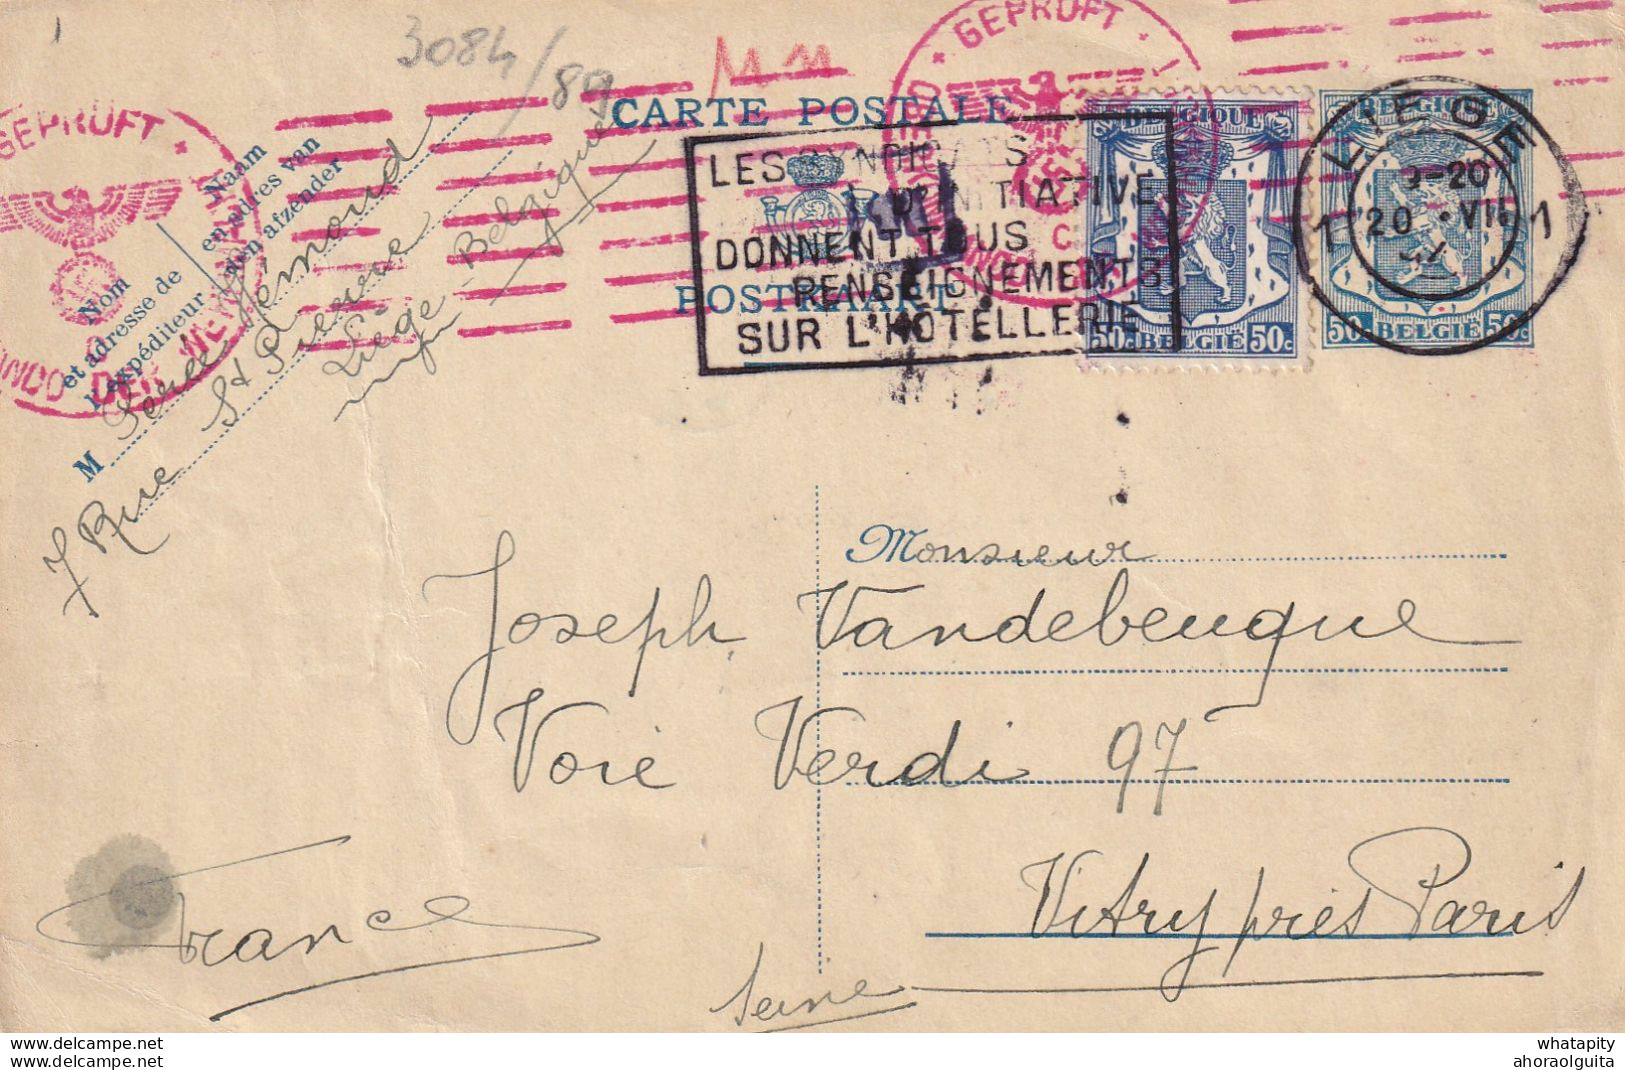 DDX 711 -- Entier Postal Petit Sceau LIEGE 1942 Vers VITRY France - Censure Allemande Mécanique - Guerra 40 – 45 (Cartas & Documentos)